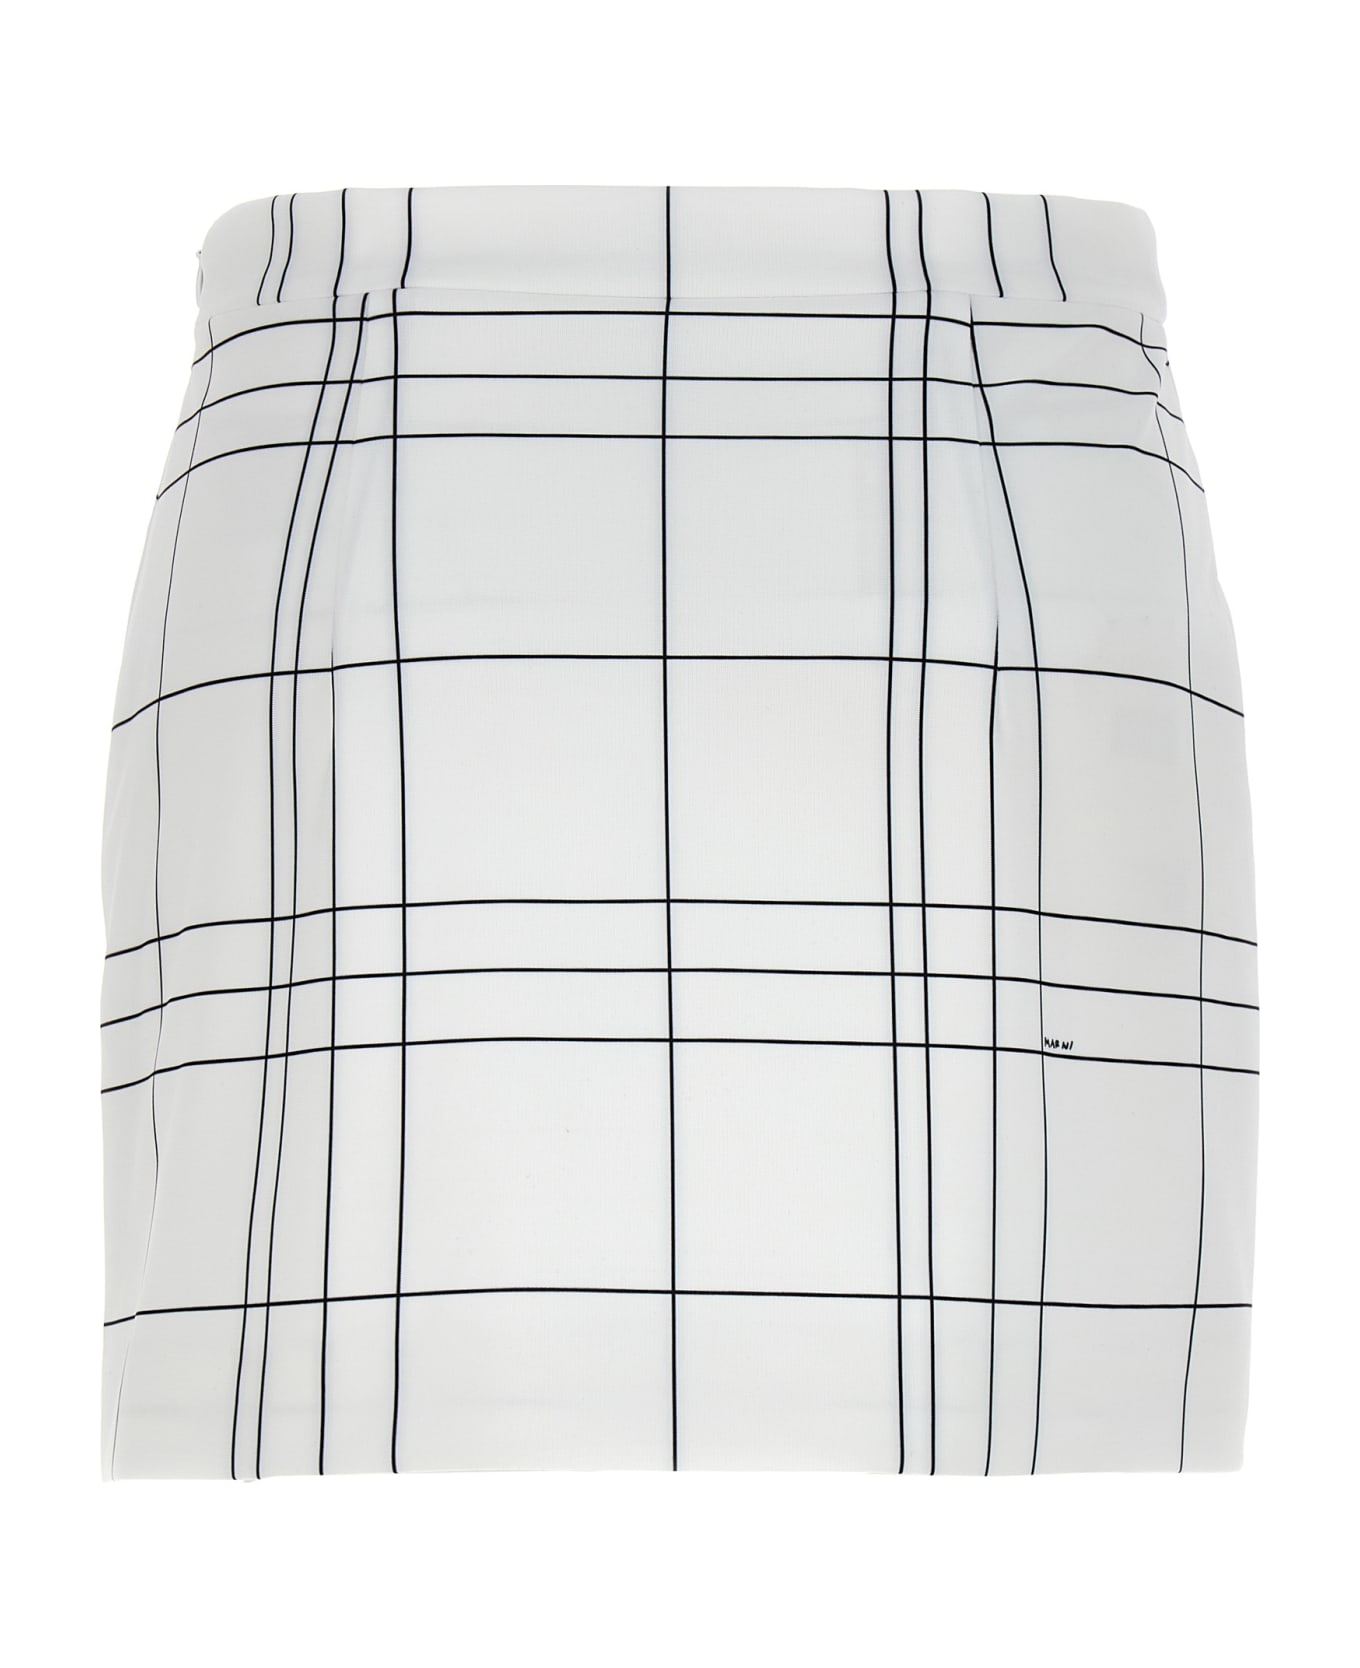 Marni Patterned Skirt - White/Black スカート